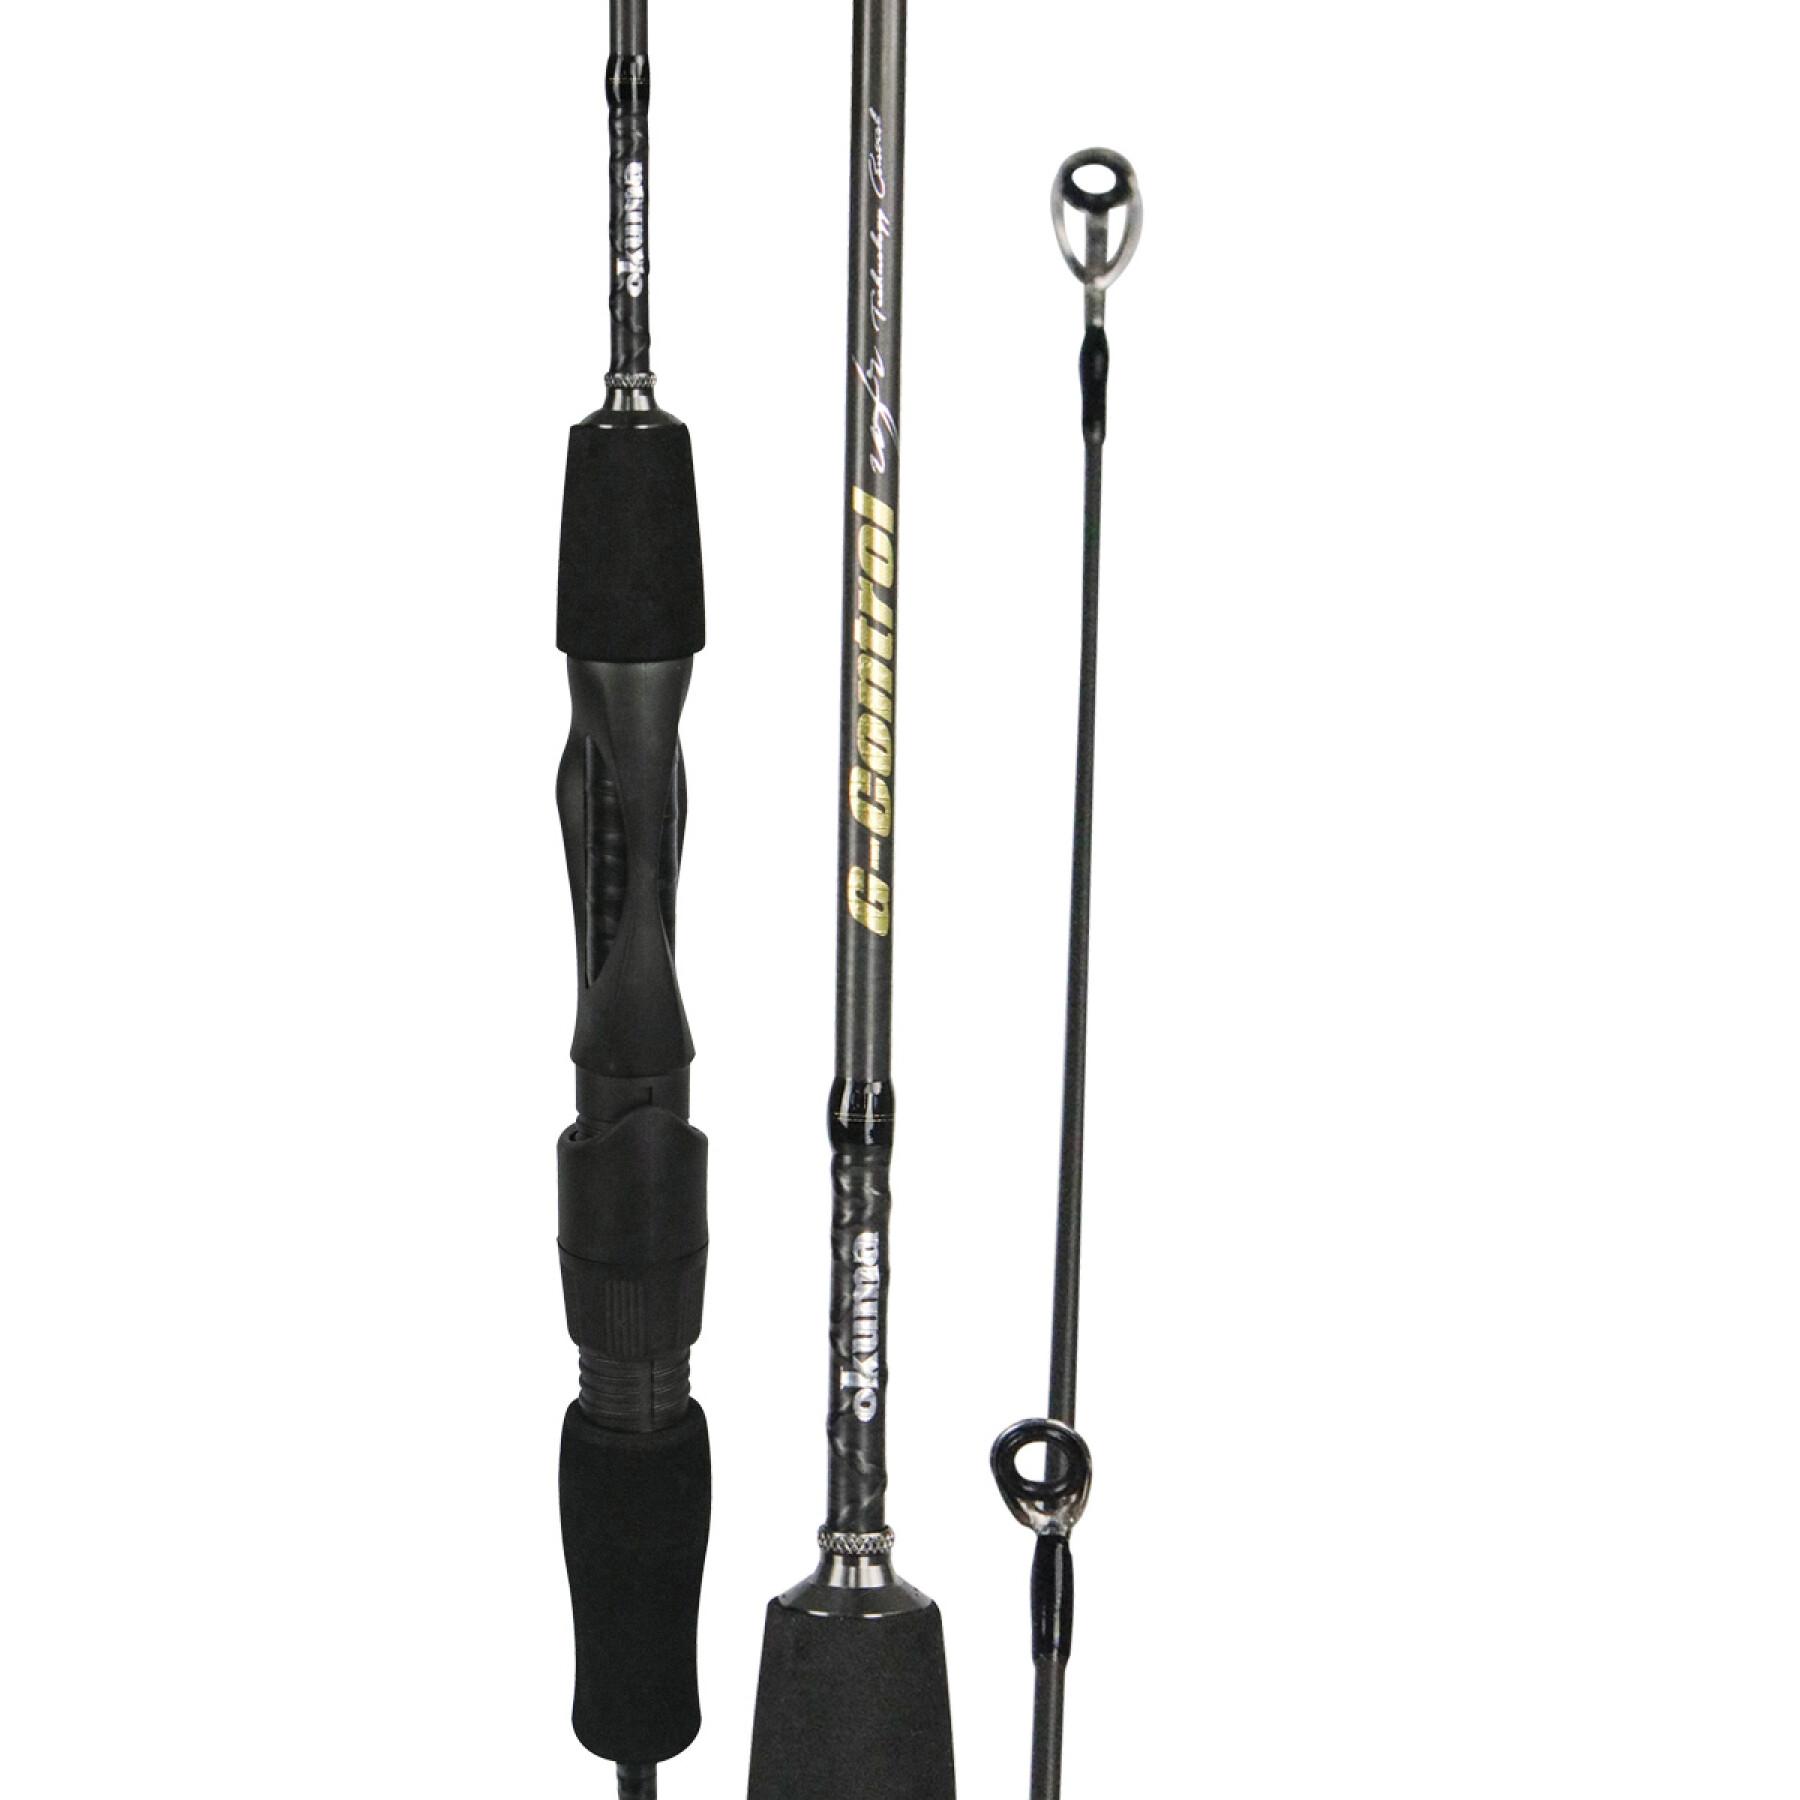 Spinning rod Okuma G-control 1-4g - Rods - Predator - Fishing